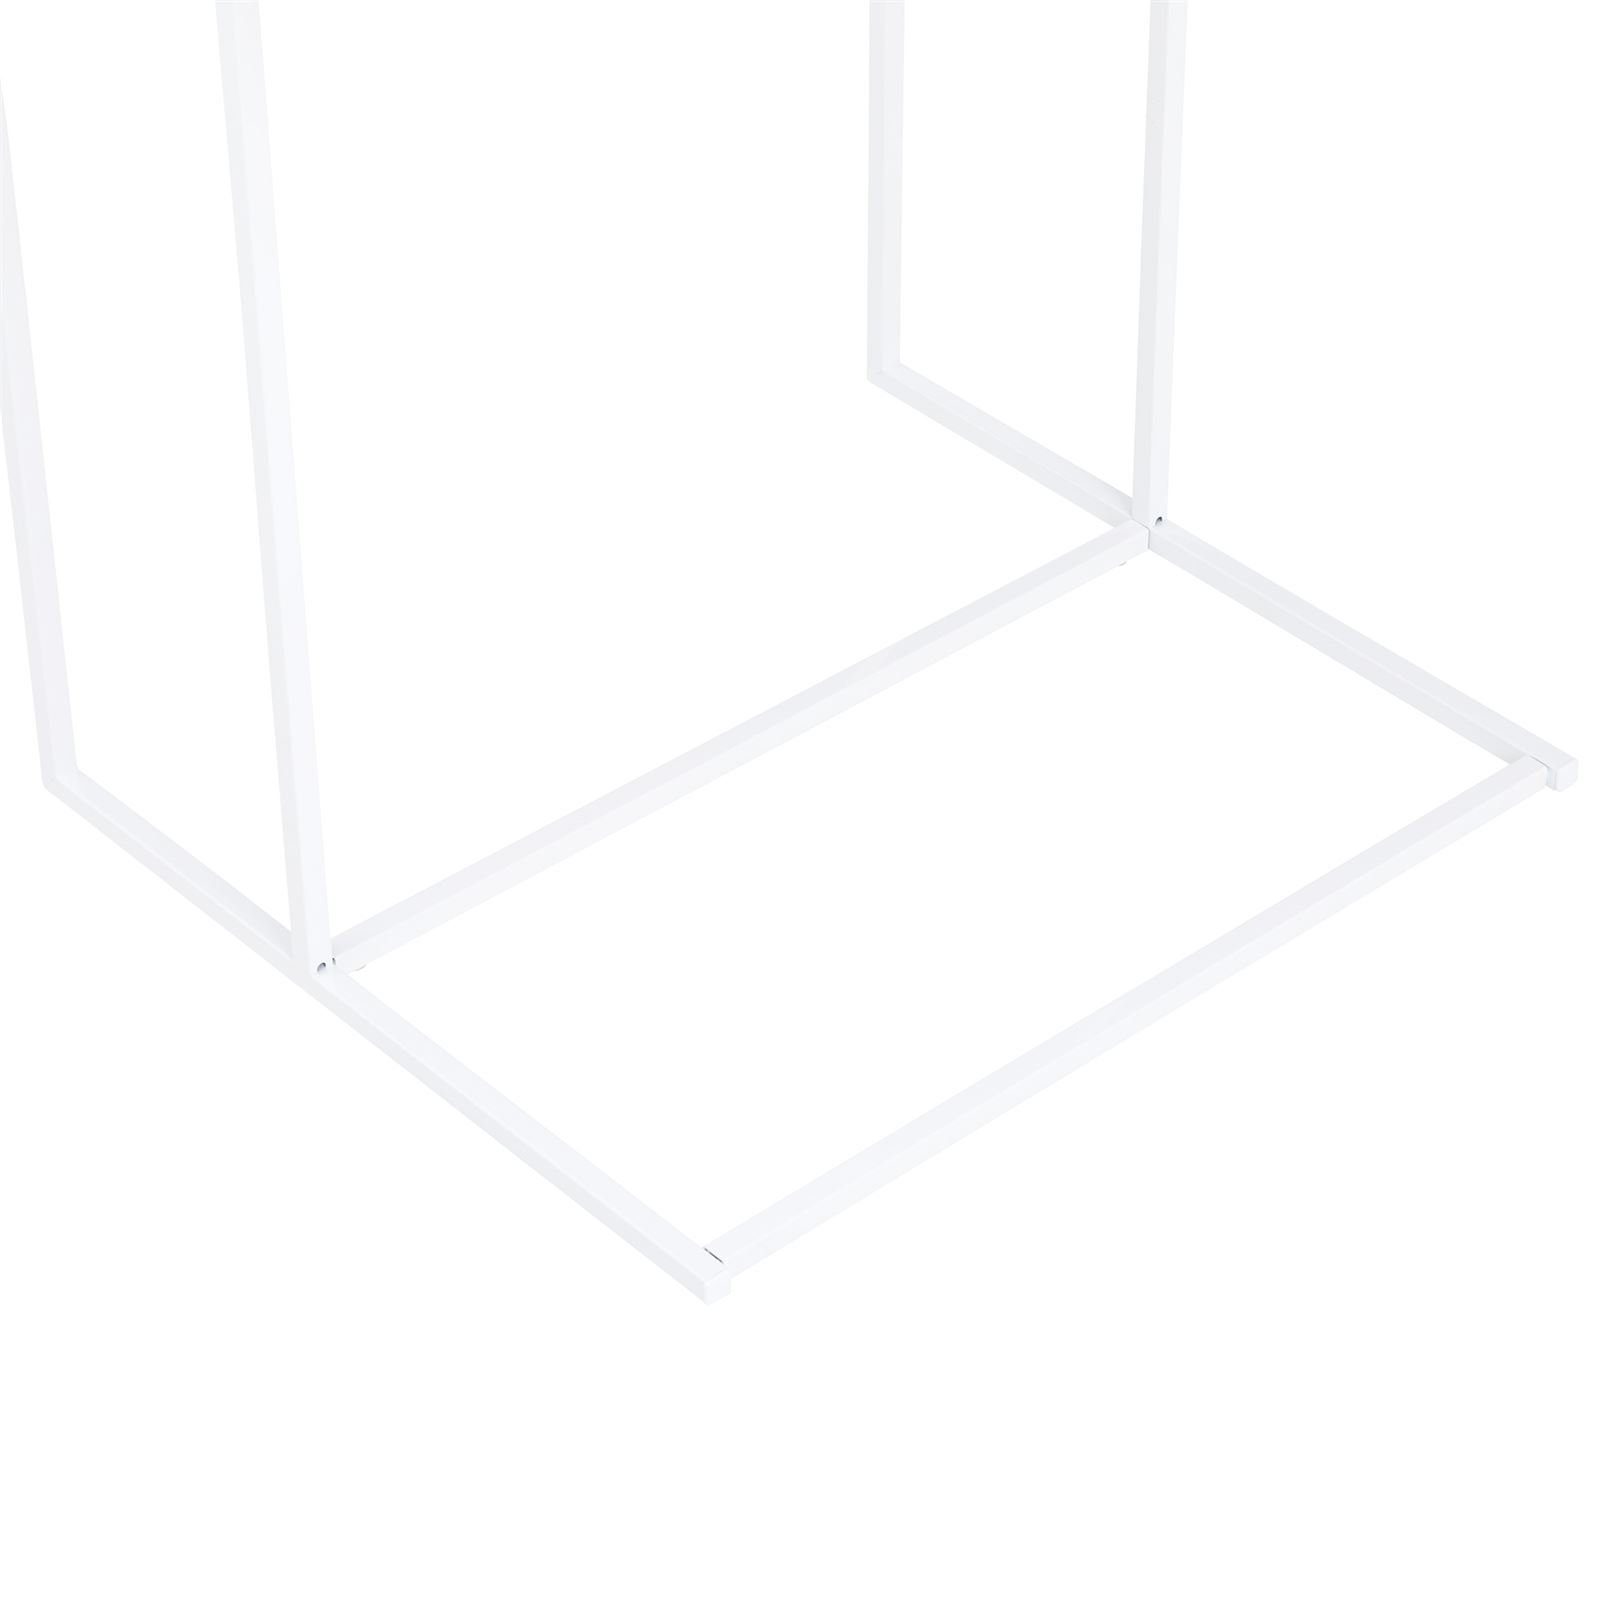 IDIMEX VITORIO, Wohnzimmertisch modern Eiche/weiß Metal Beistelltisch Couchtisch Sofatisch Beistelltisch C-FORM Sonoma